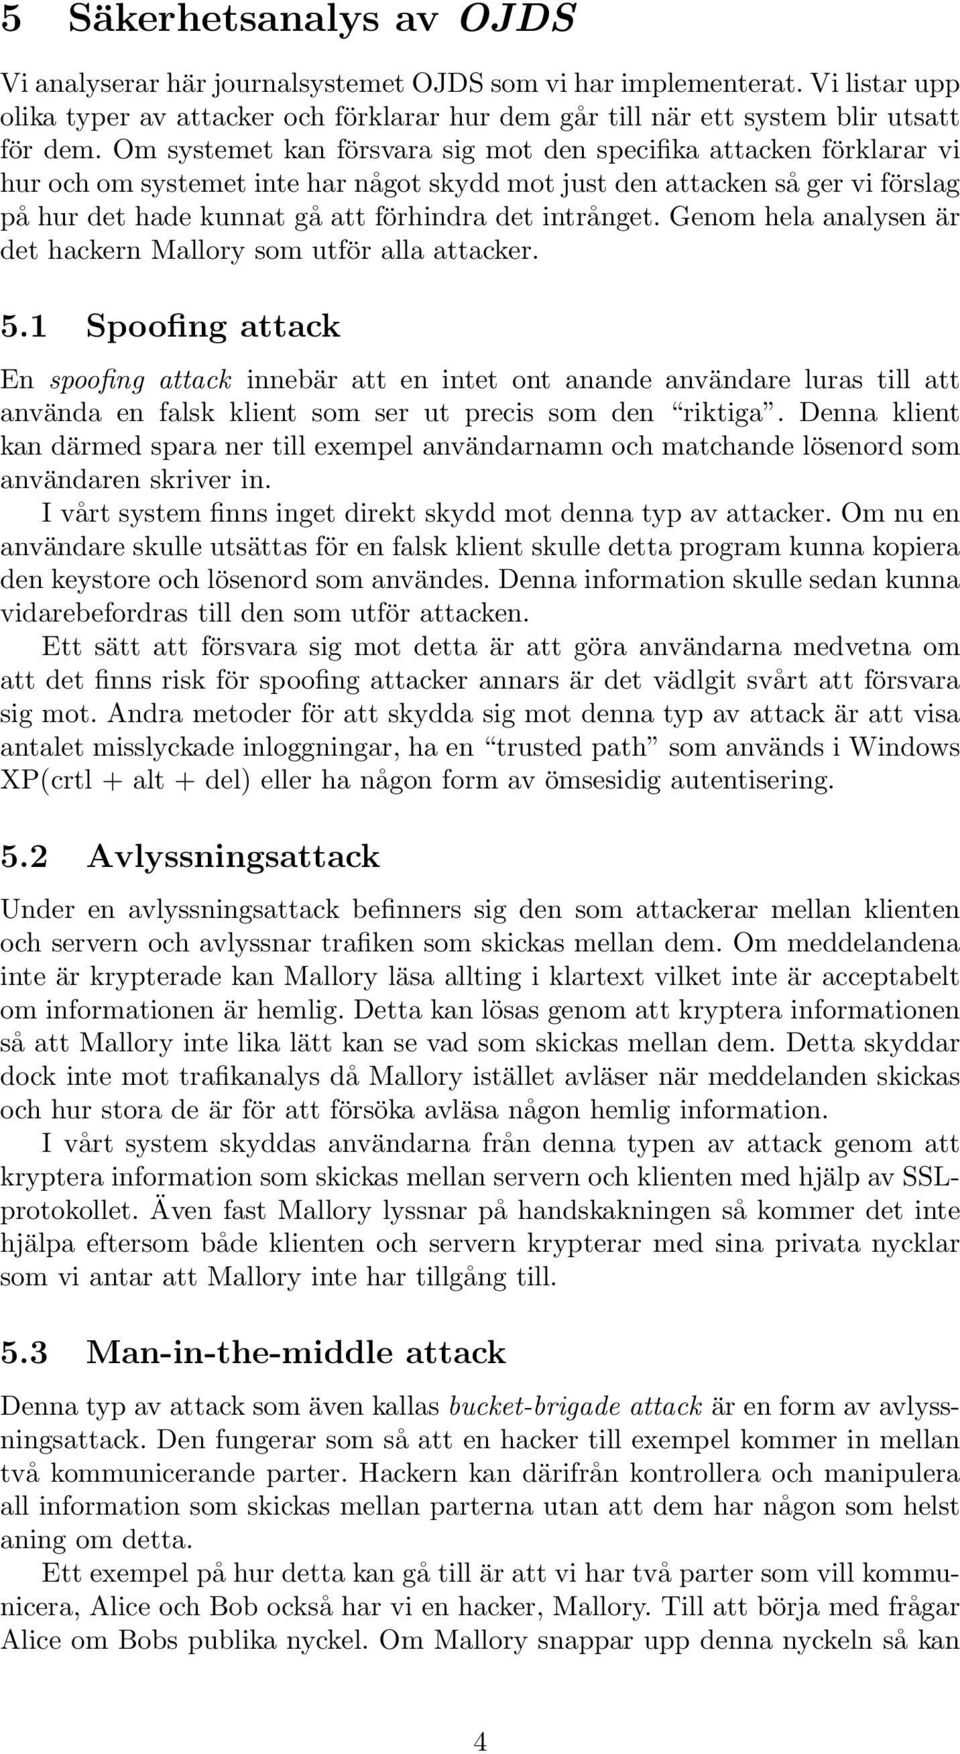 intrånget. Genom hela analysen är det hackern Mallory som utför alla attacker. 5.